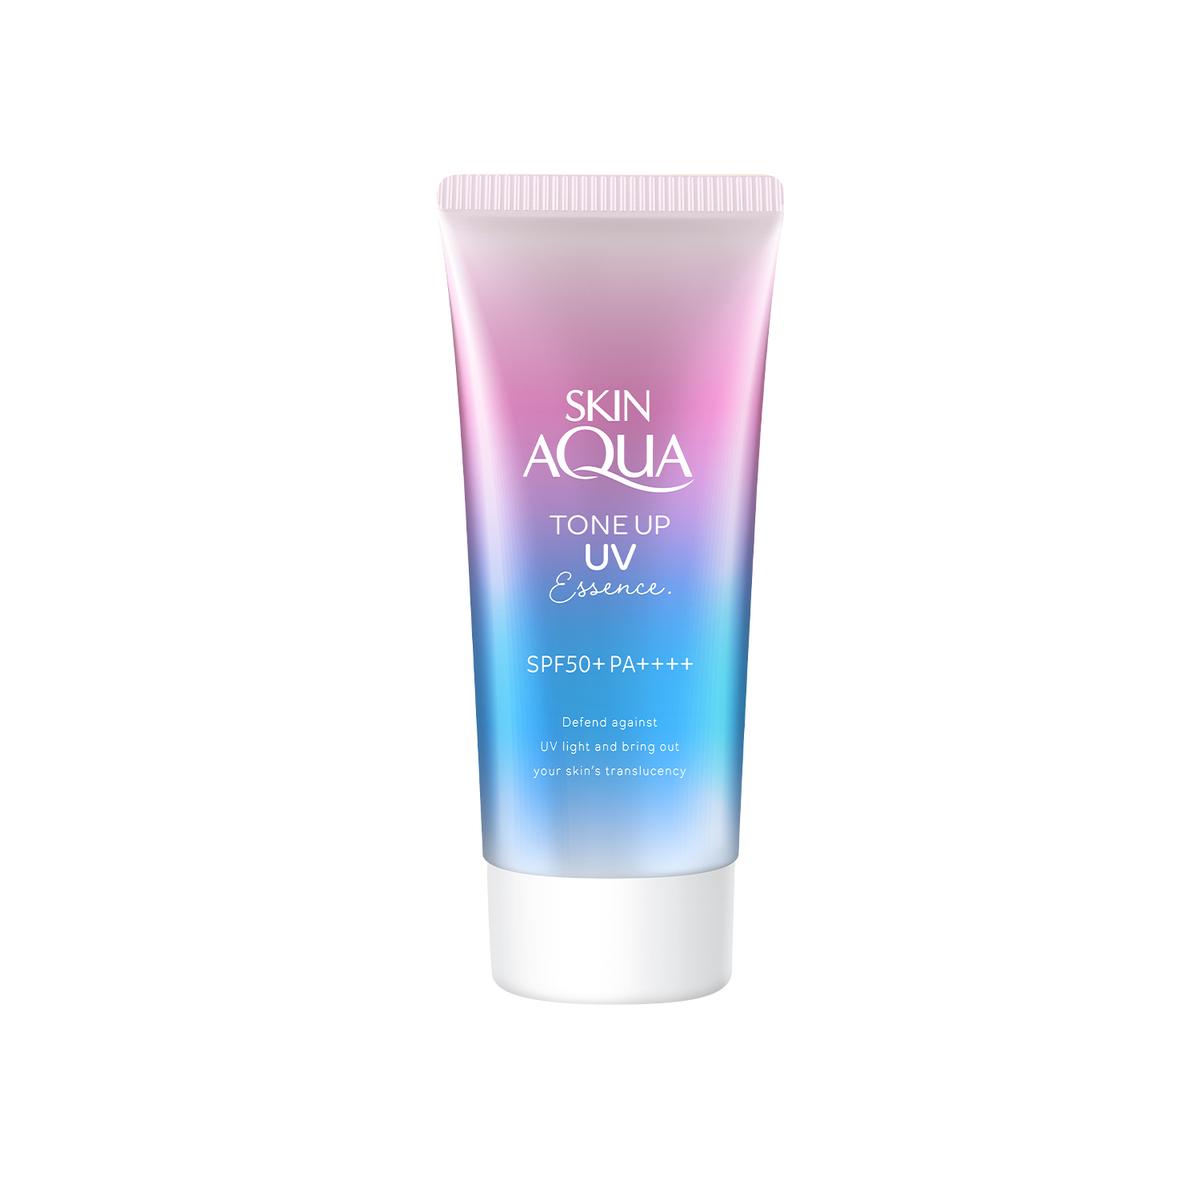 รูปภาพ:Sunplay Skin Aqua Tone Up UV Essence